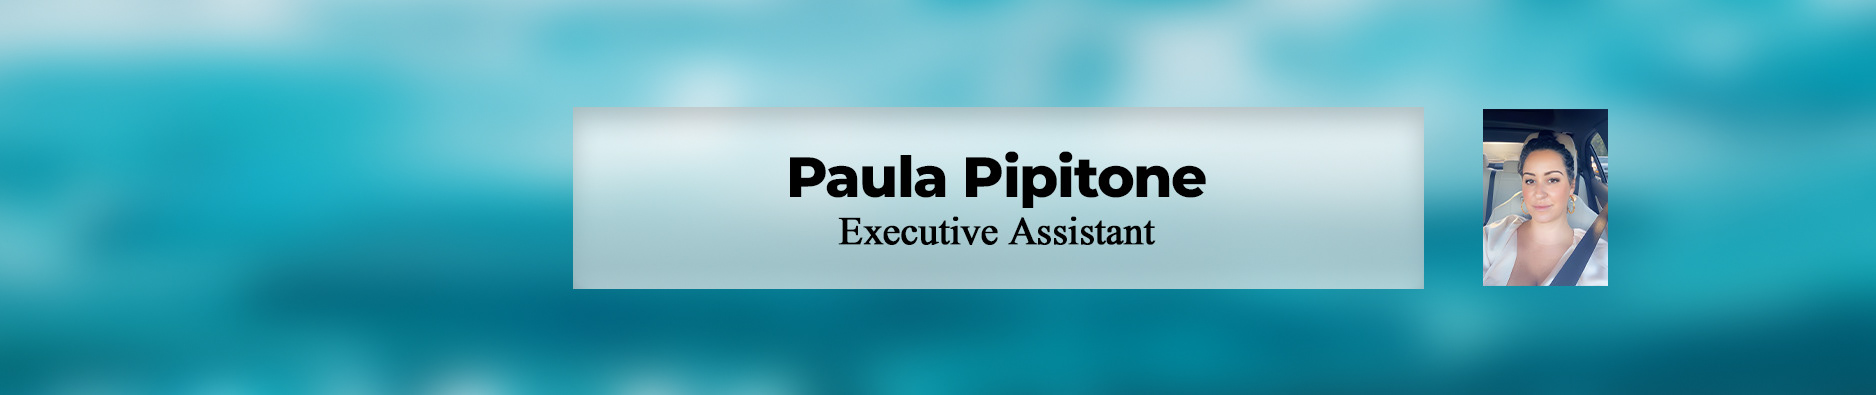 Paula Pipitone's profile banner